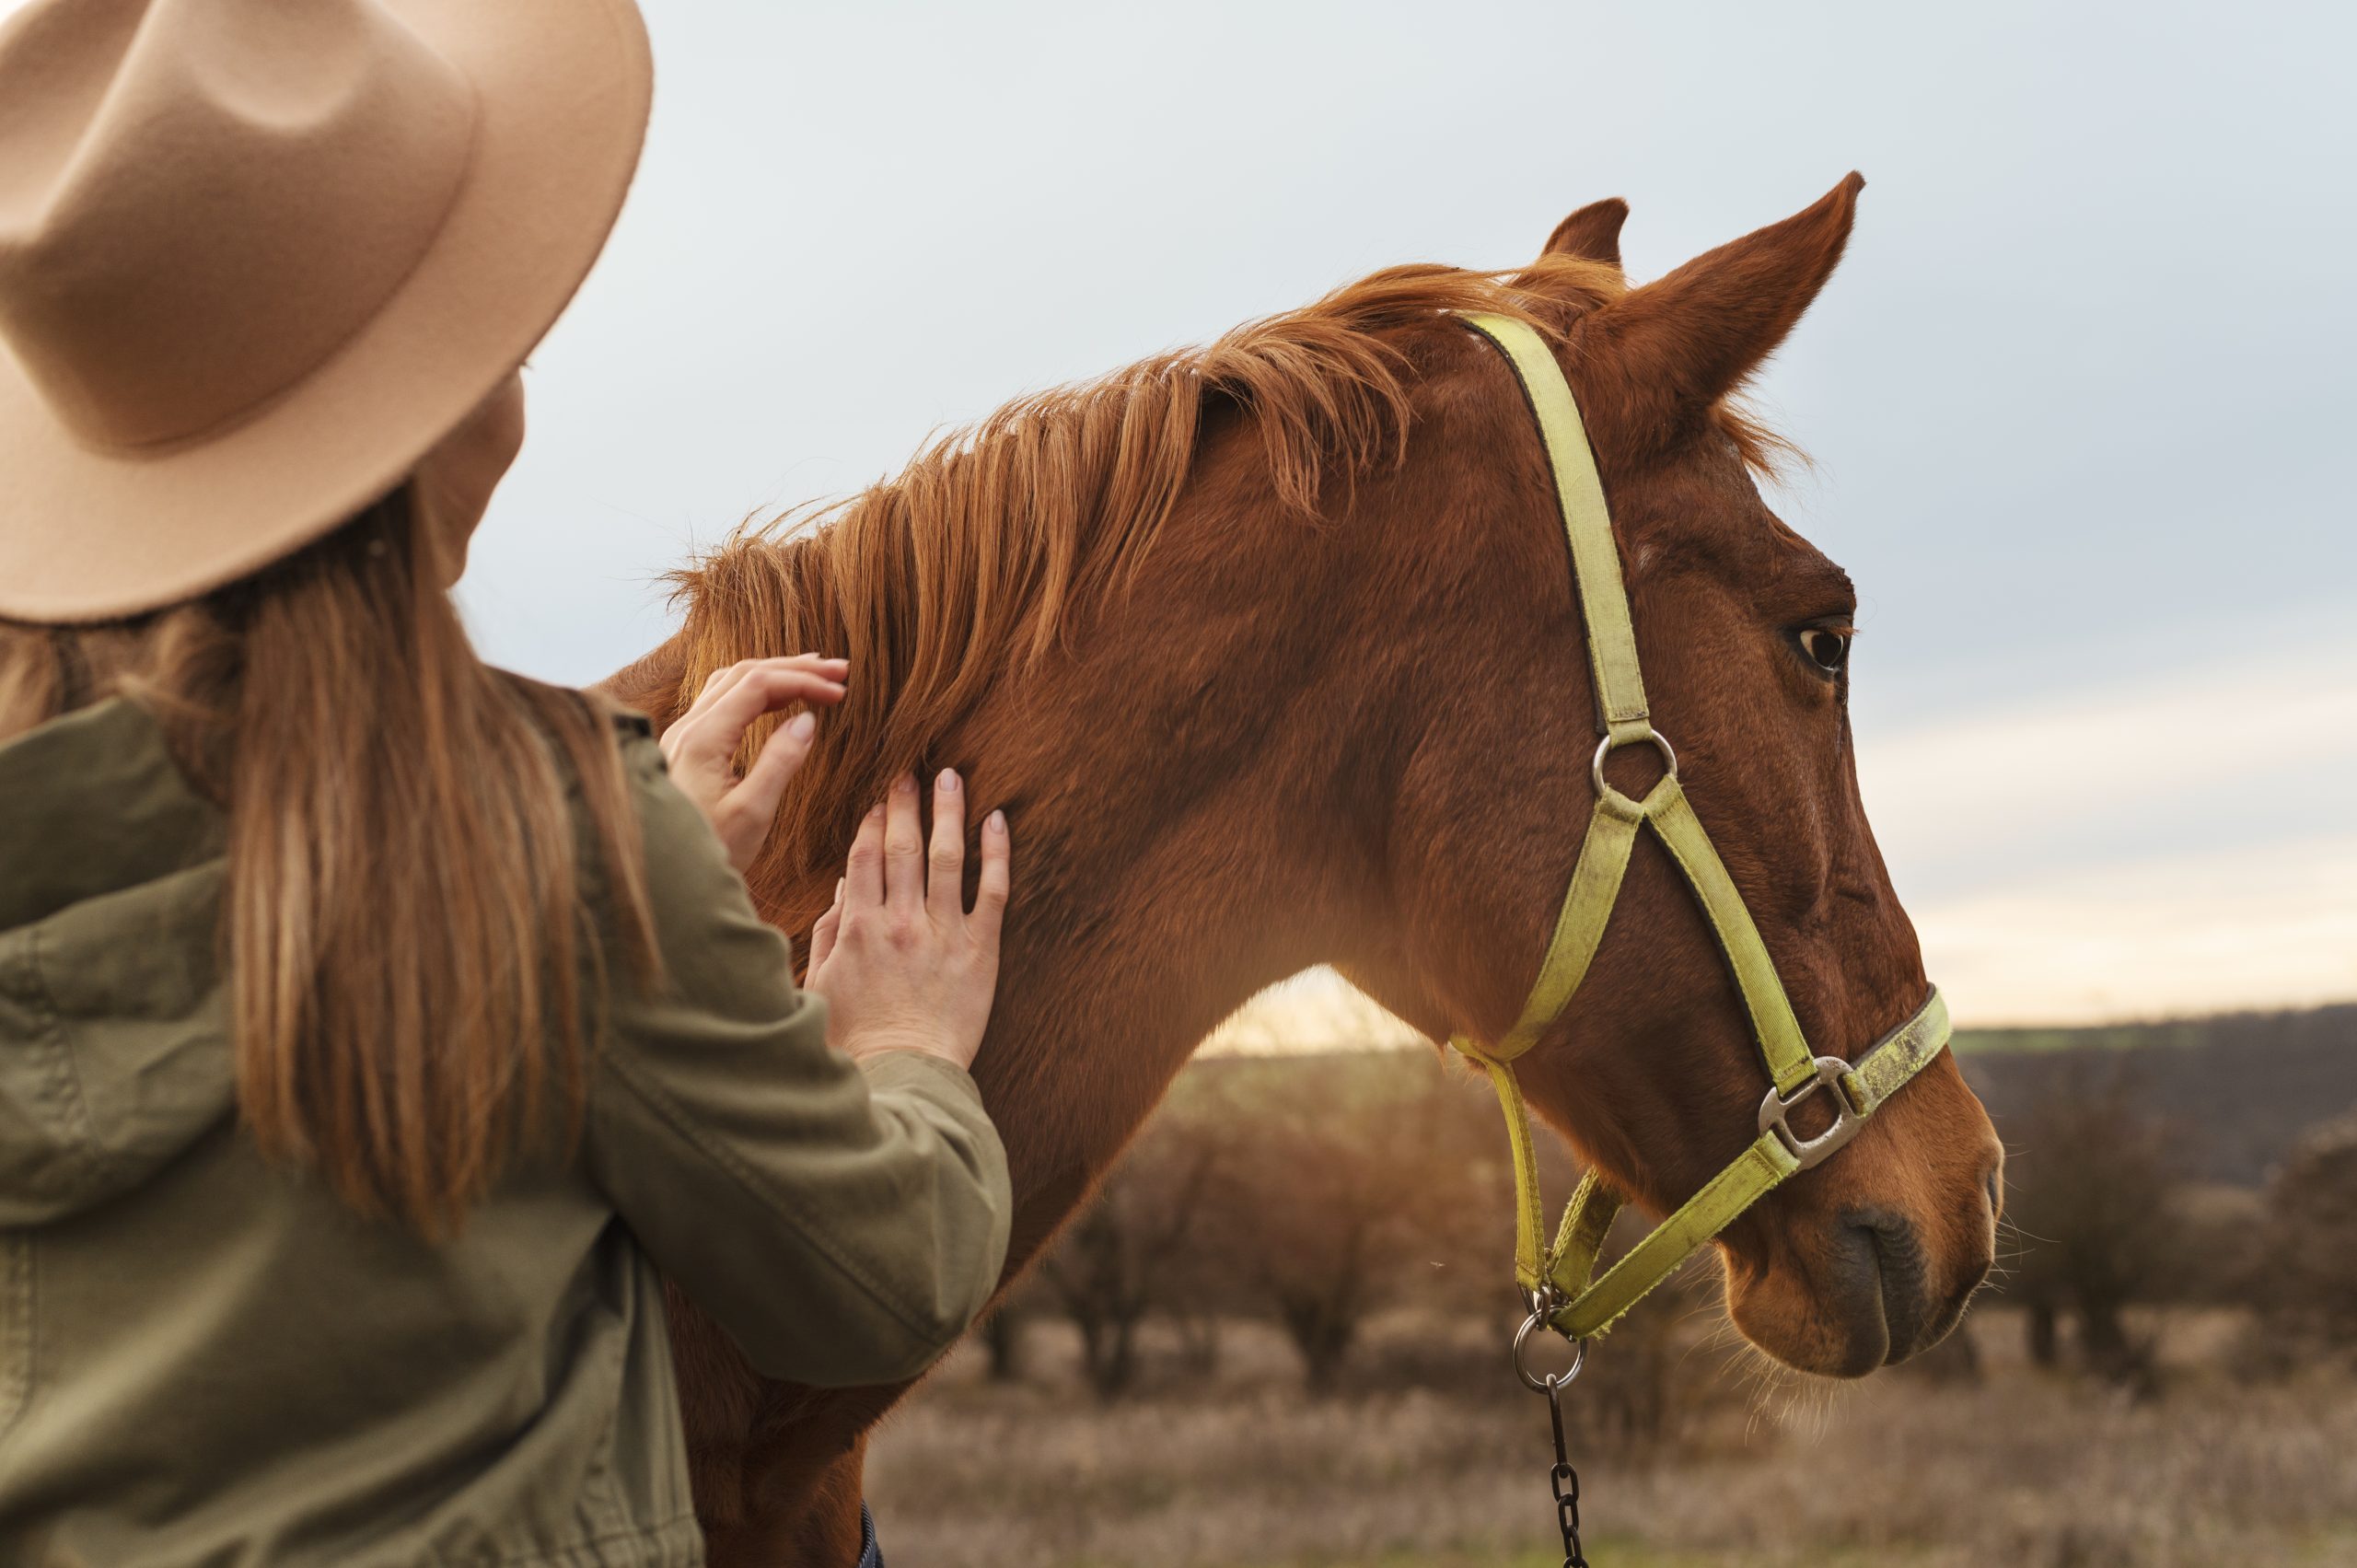 Os cavalos nos mostram tudo o que precisamos saber sobre nós mesmos